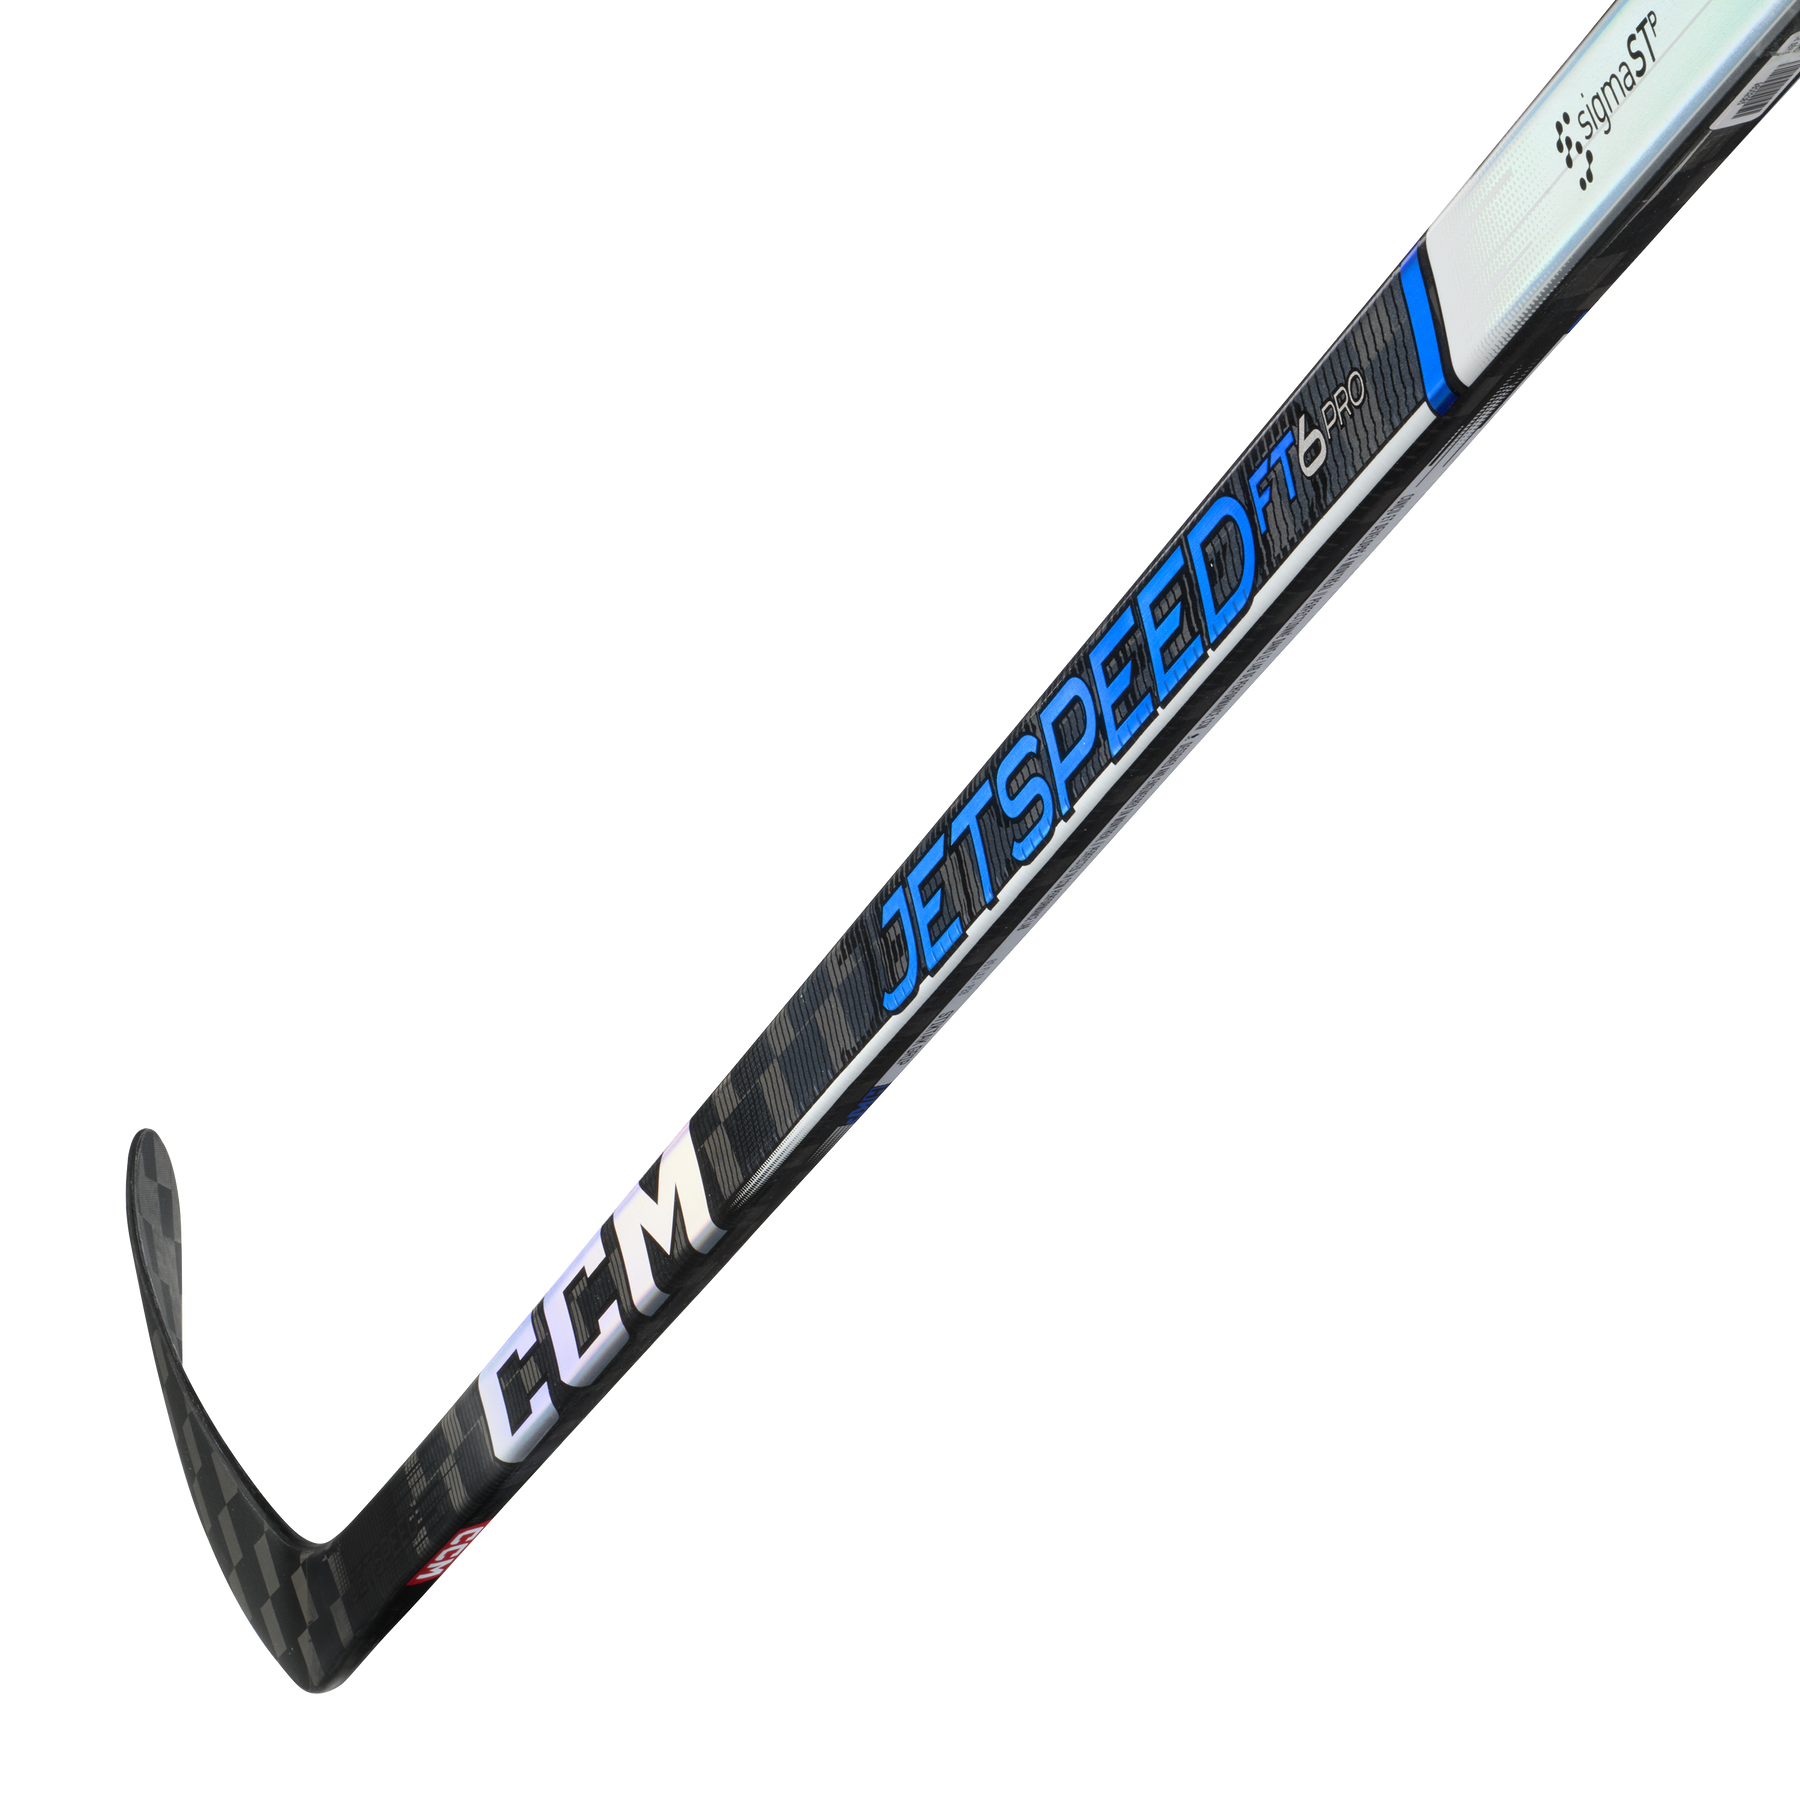 CCM JetSpeed FT6 Pro Bâton de Hockey Junior (Bleu)